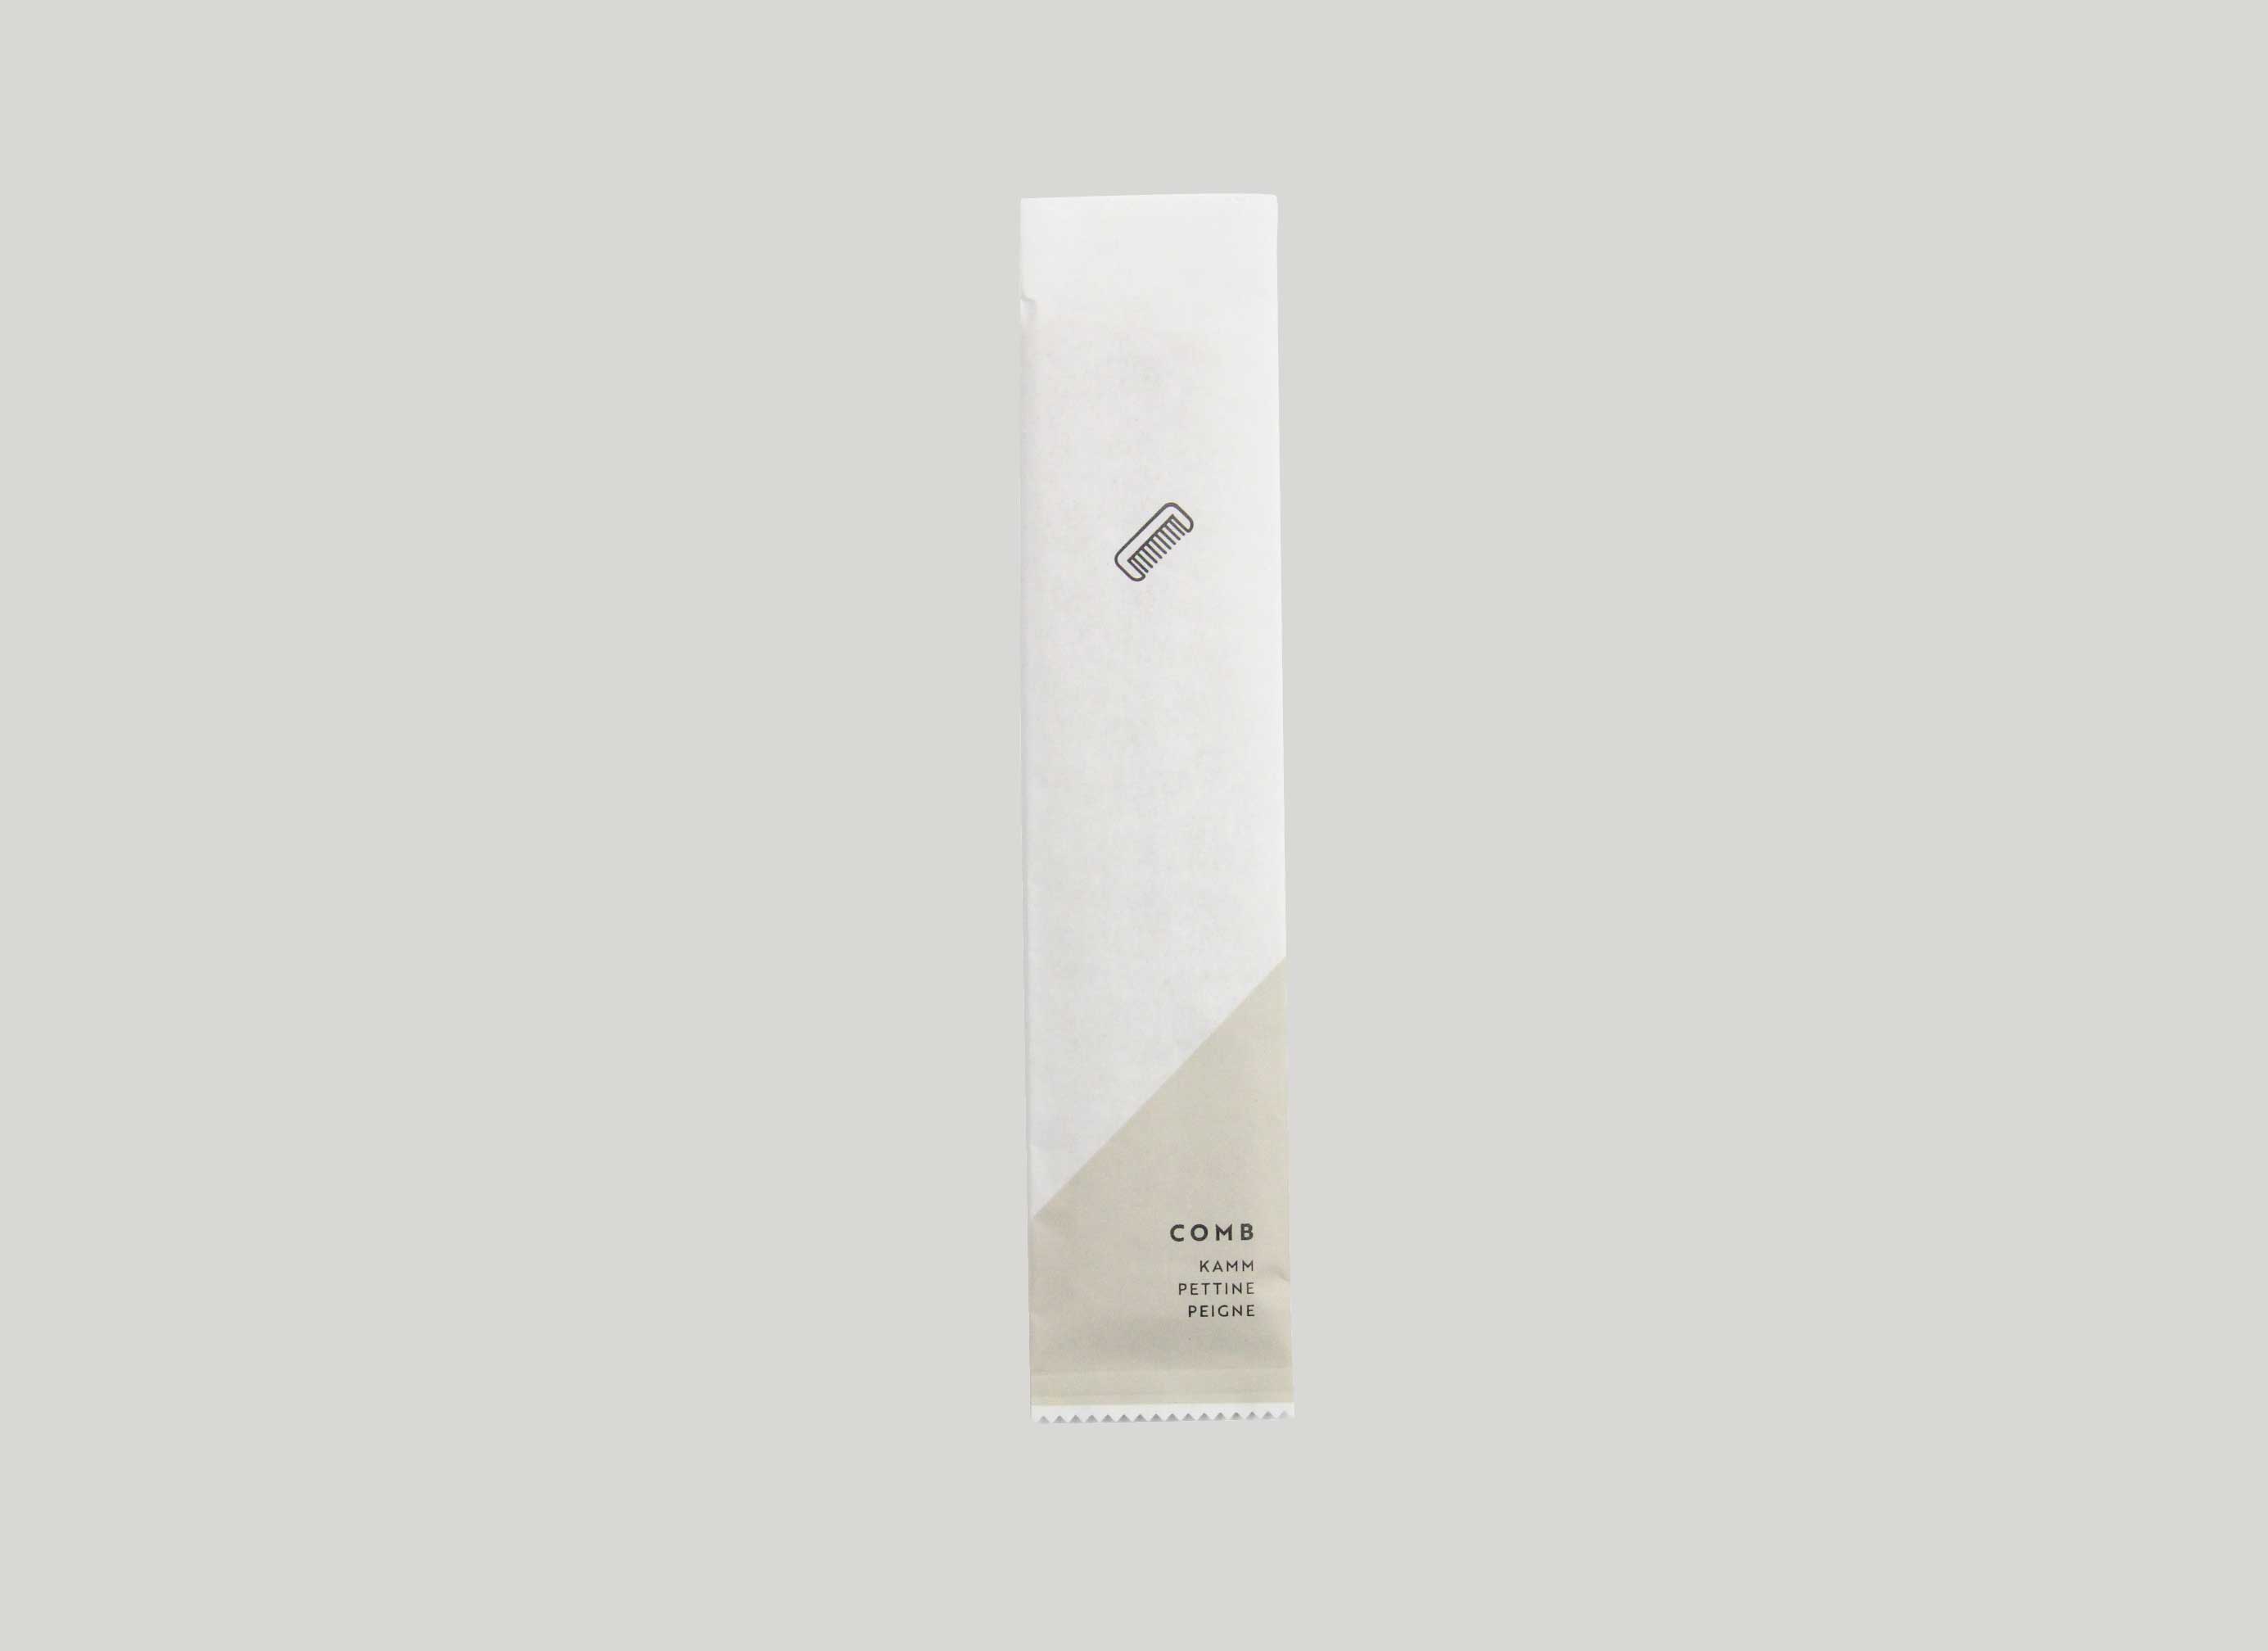 BASIC PAPER - Pettine prodotto con 35 % paglia, lunghezza 15,5 cm, in bustina di carta